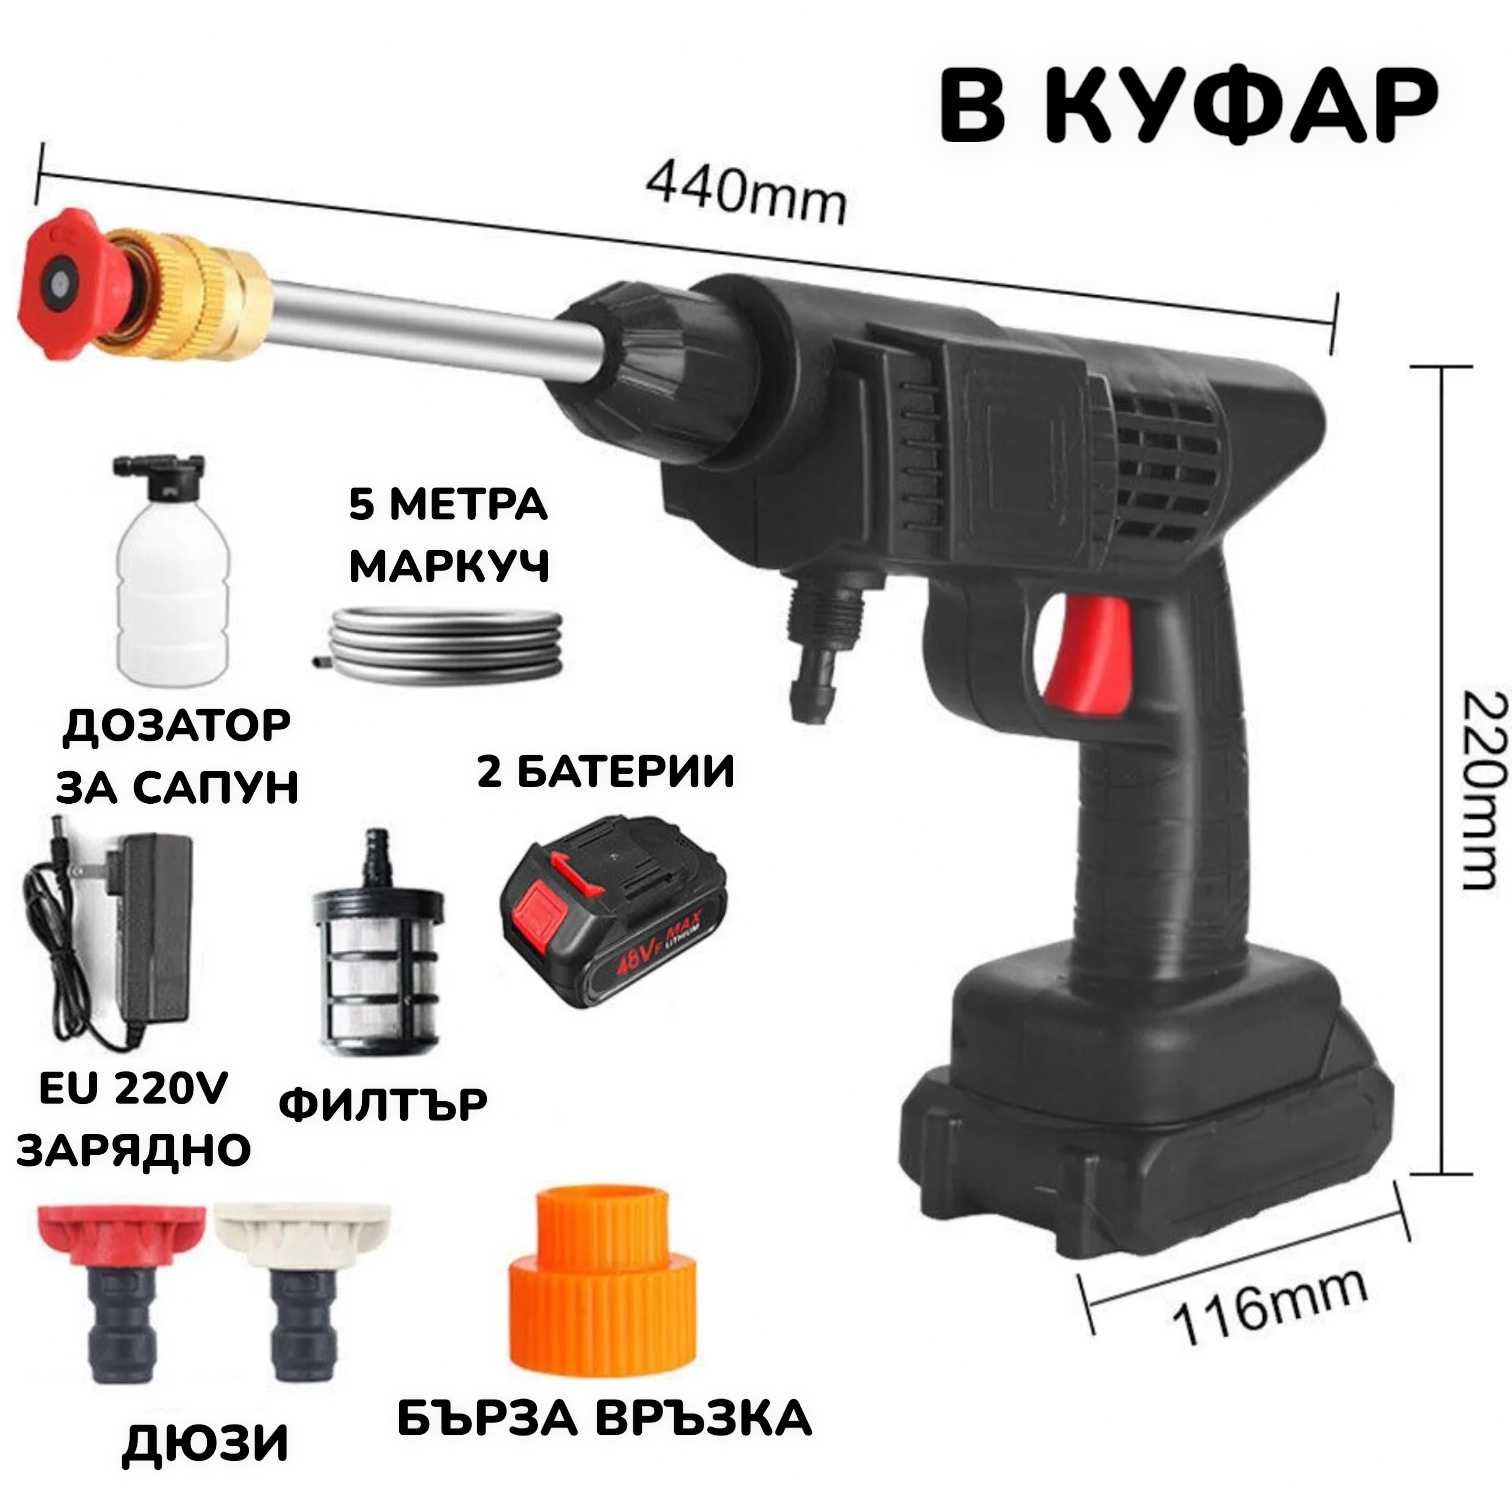 ПОДАРЪК Челник + 48V Акумулаторна Водоструйка с 2 Батерии в куфар